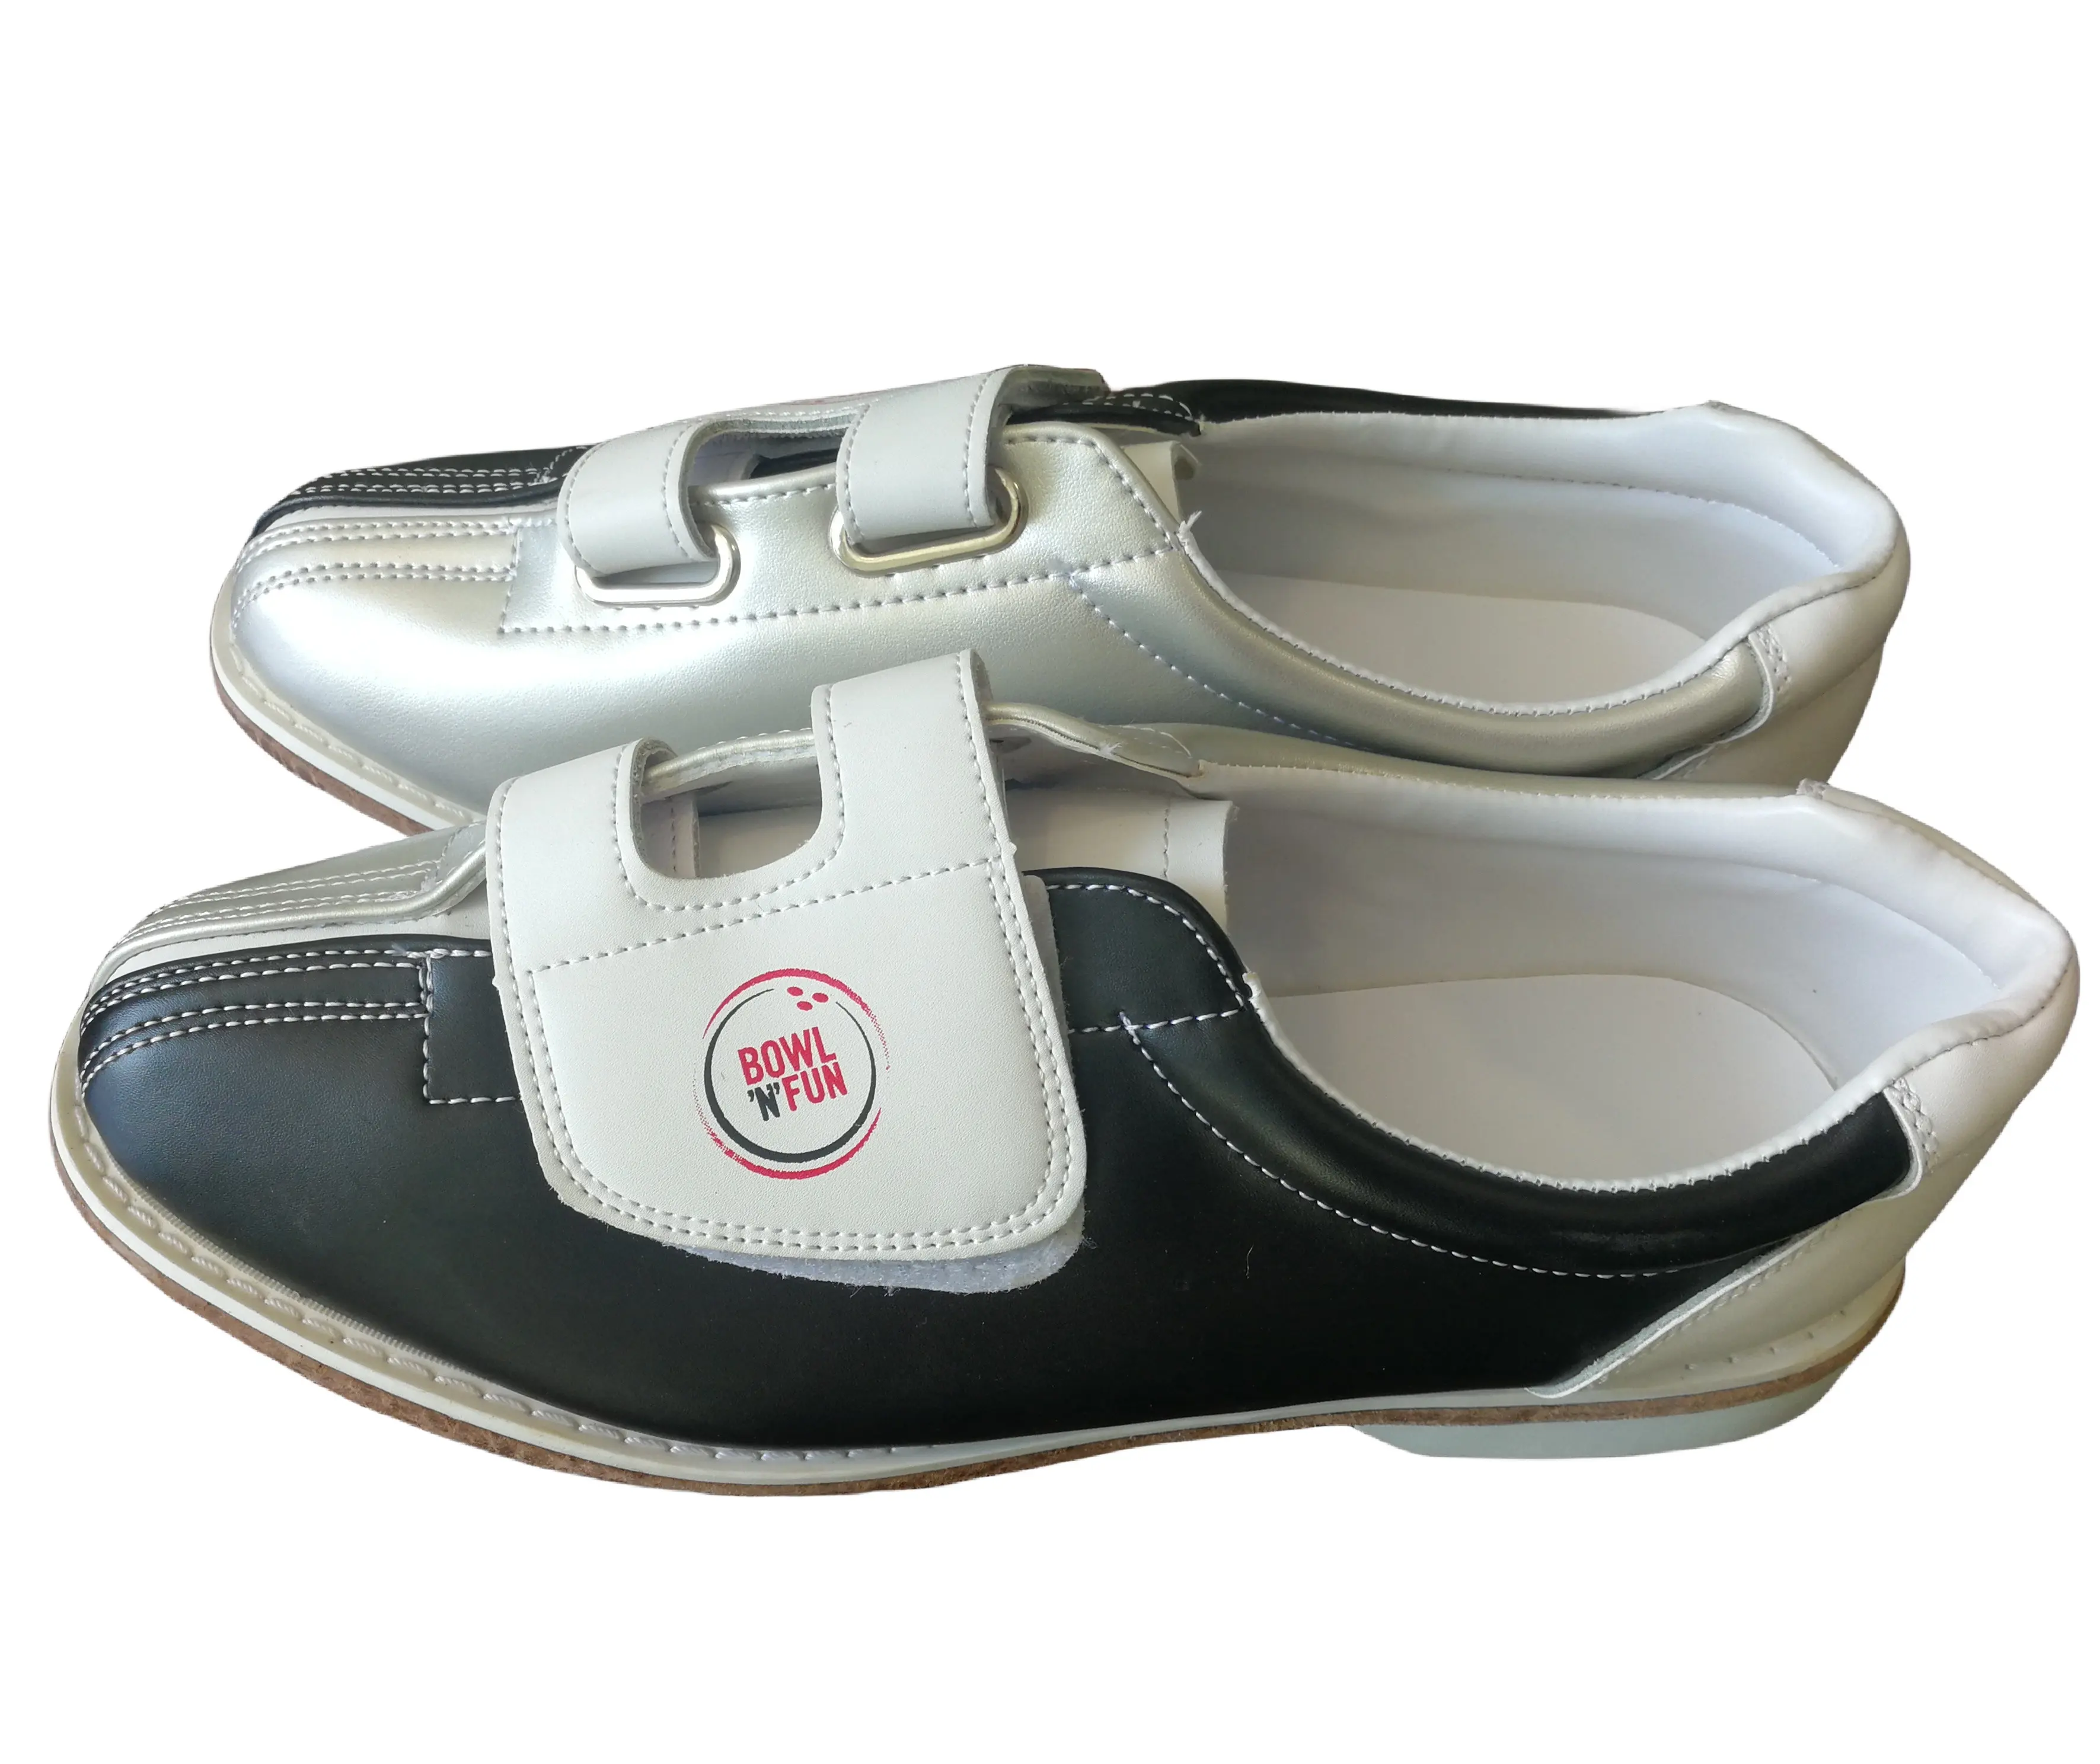 Nuova alta qualità cina fabbricazione professionale scarpe da Bowling uomo Brunswick Bowling Alley scarpe